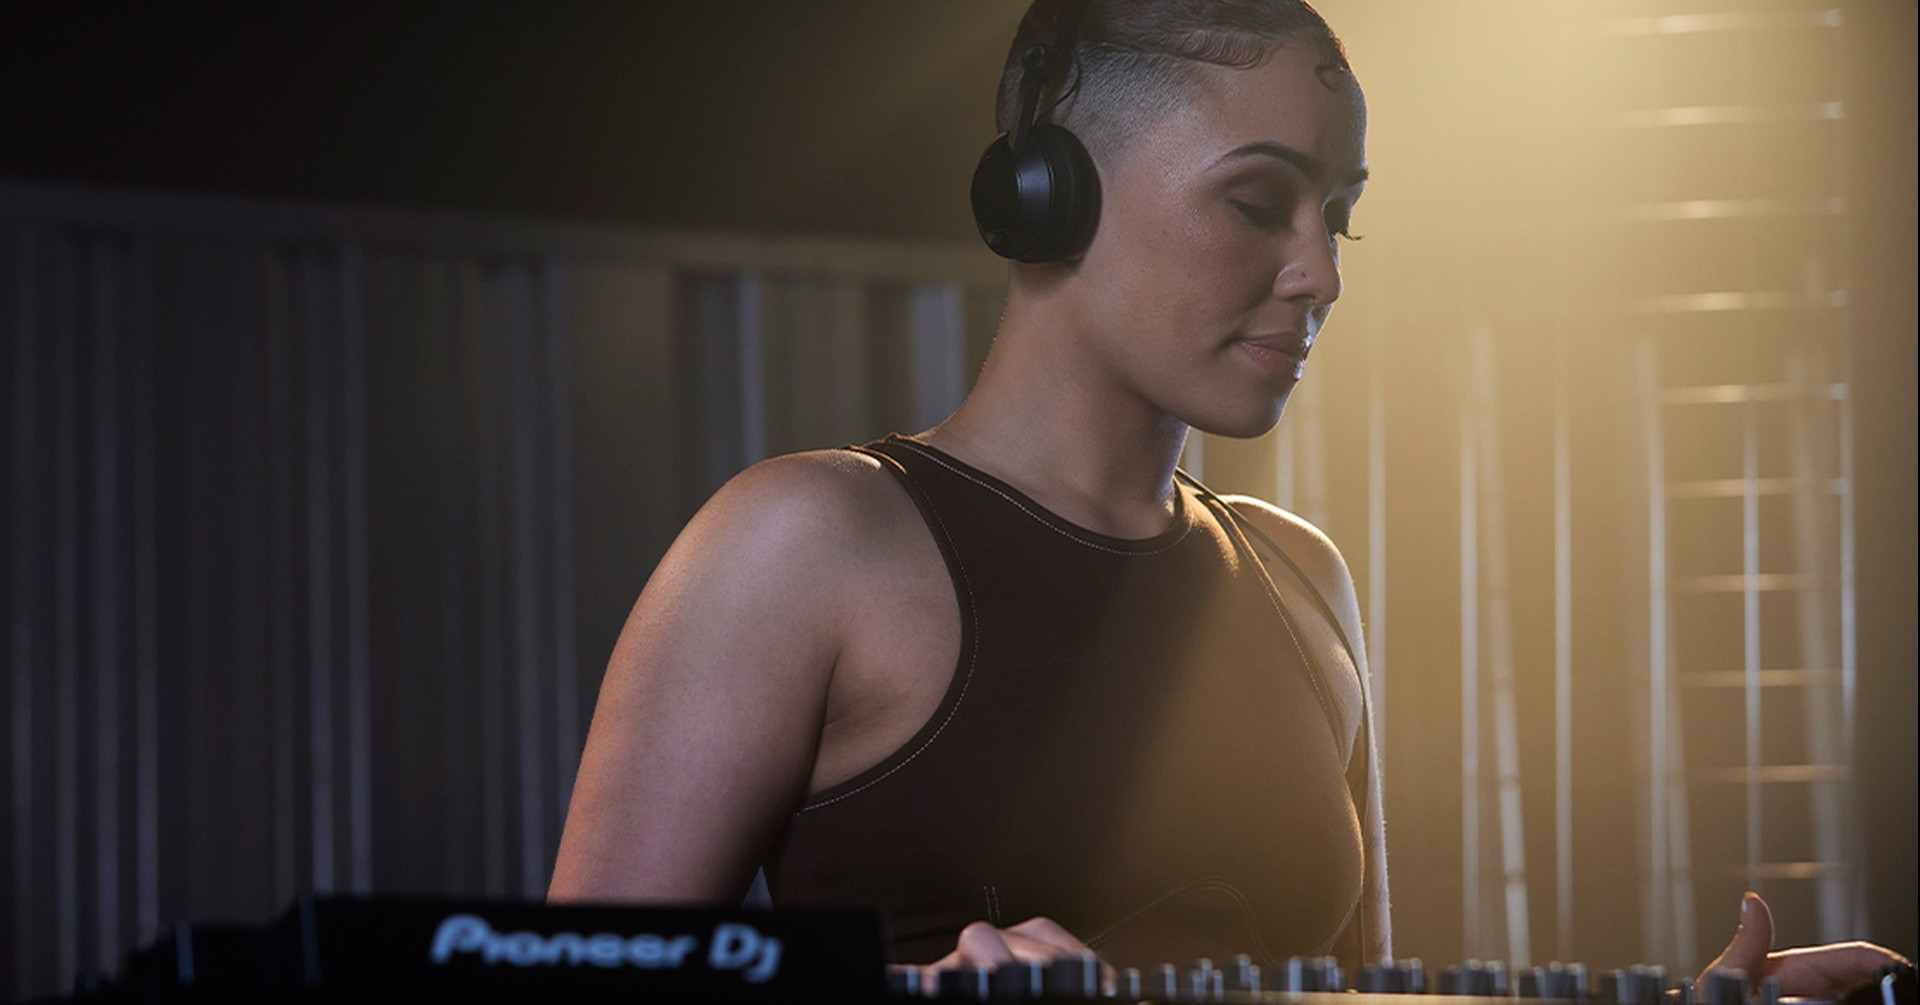 HDJ-CX - nowe słuchawki od Pioneer DJ